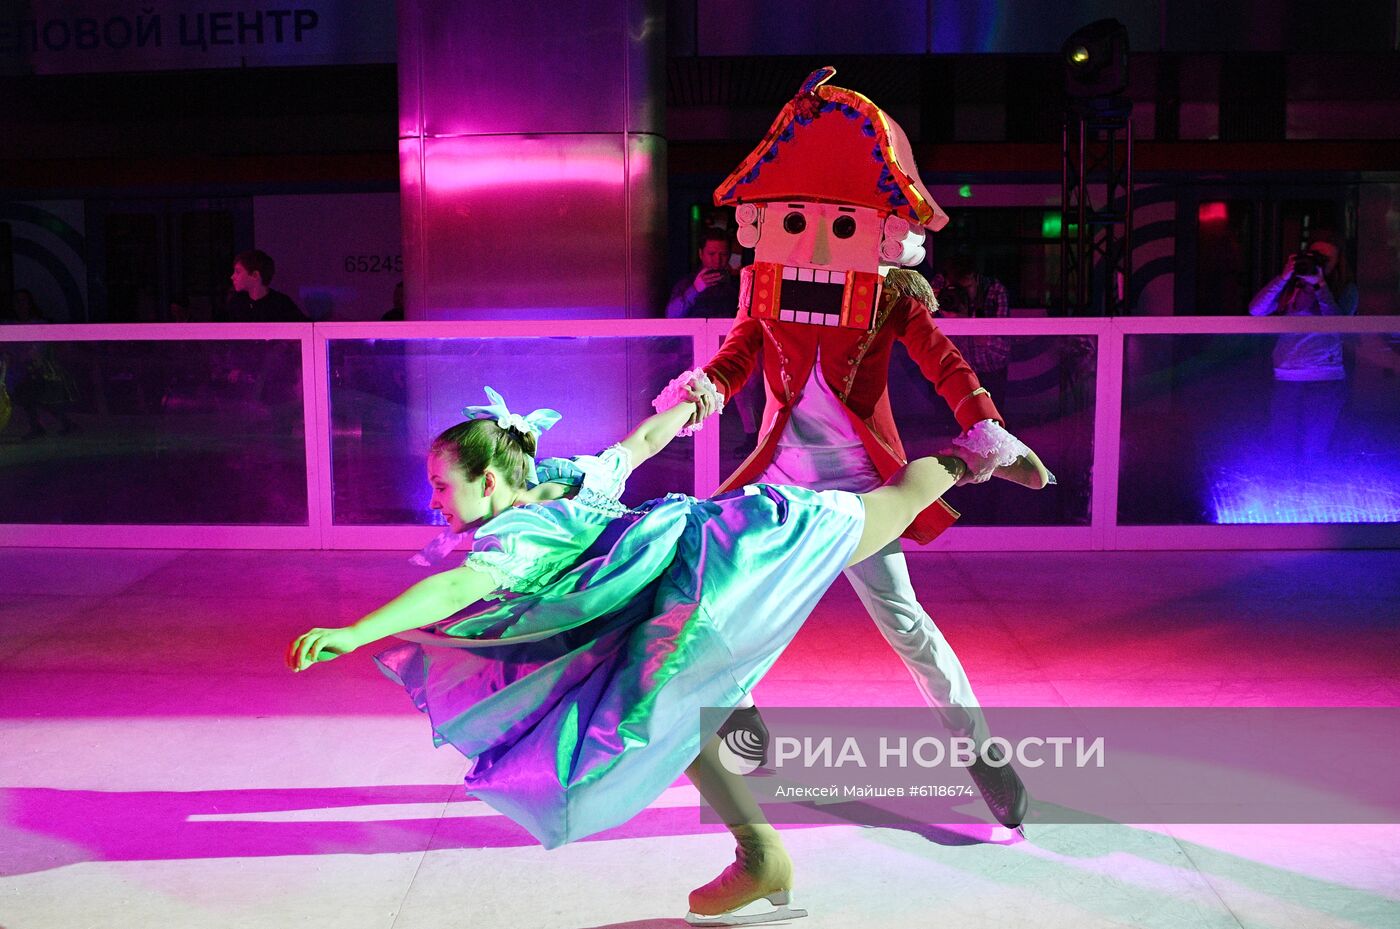 Ледовое шоу "Щелкунчик" в Московском метрополитене